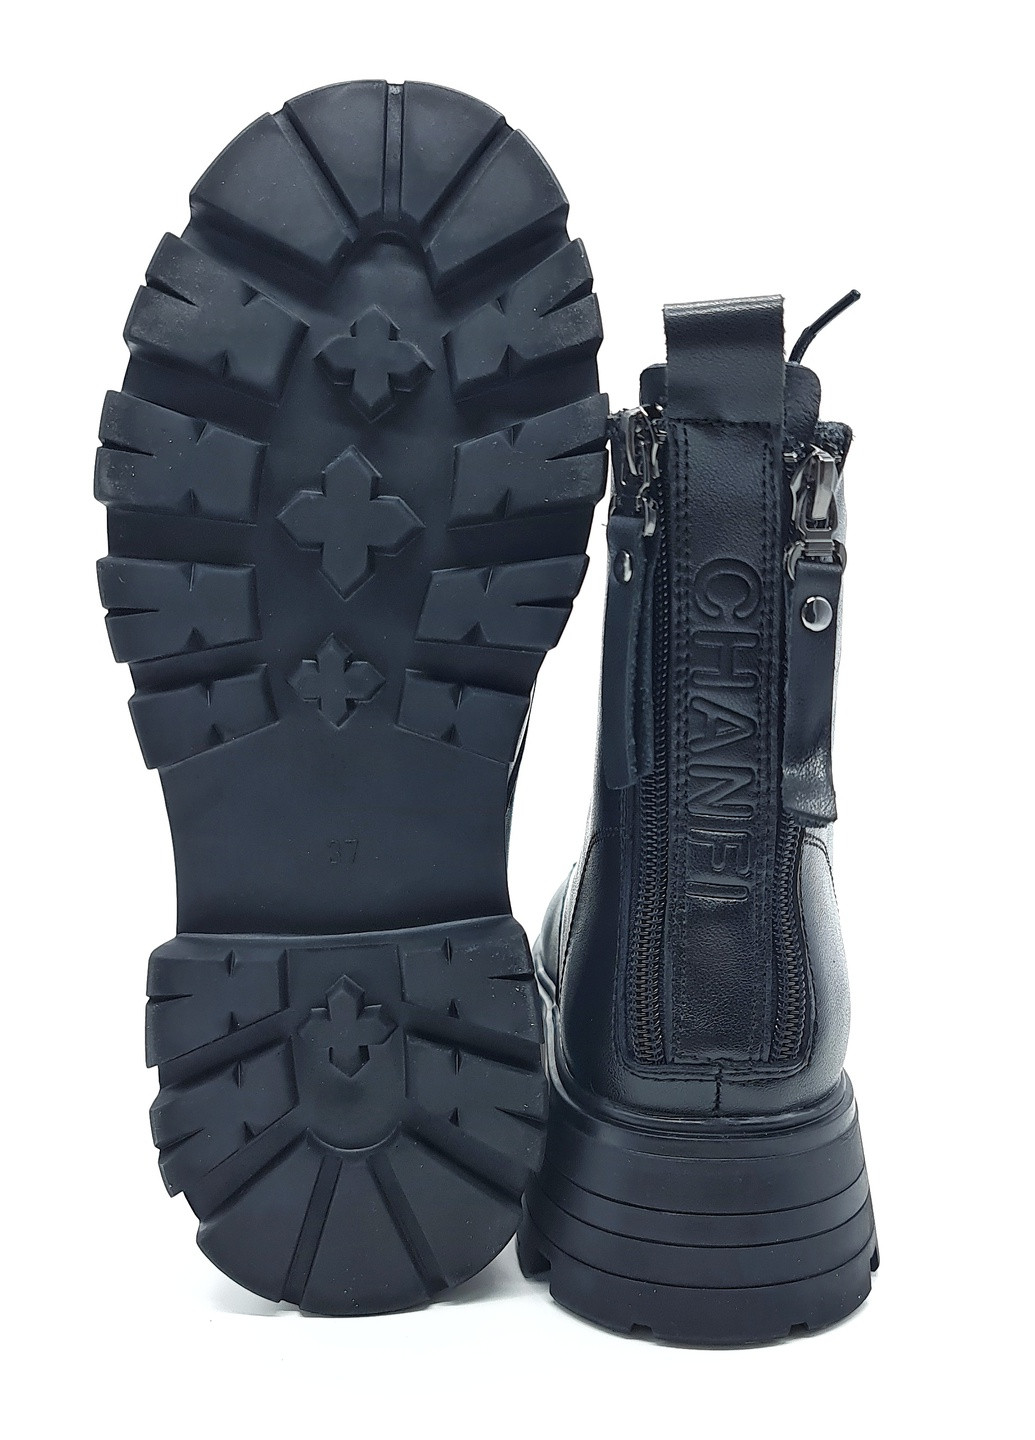 Осенние женские ботинки на овчине черные кожаные ya-19-4 230 мм (р) Yalasou